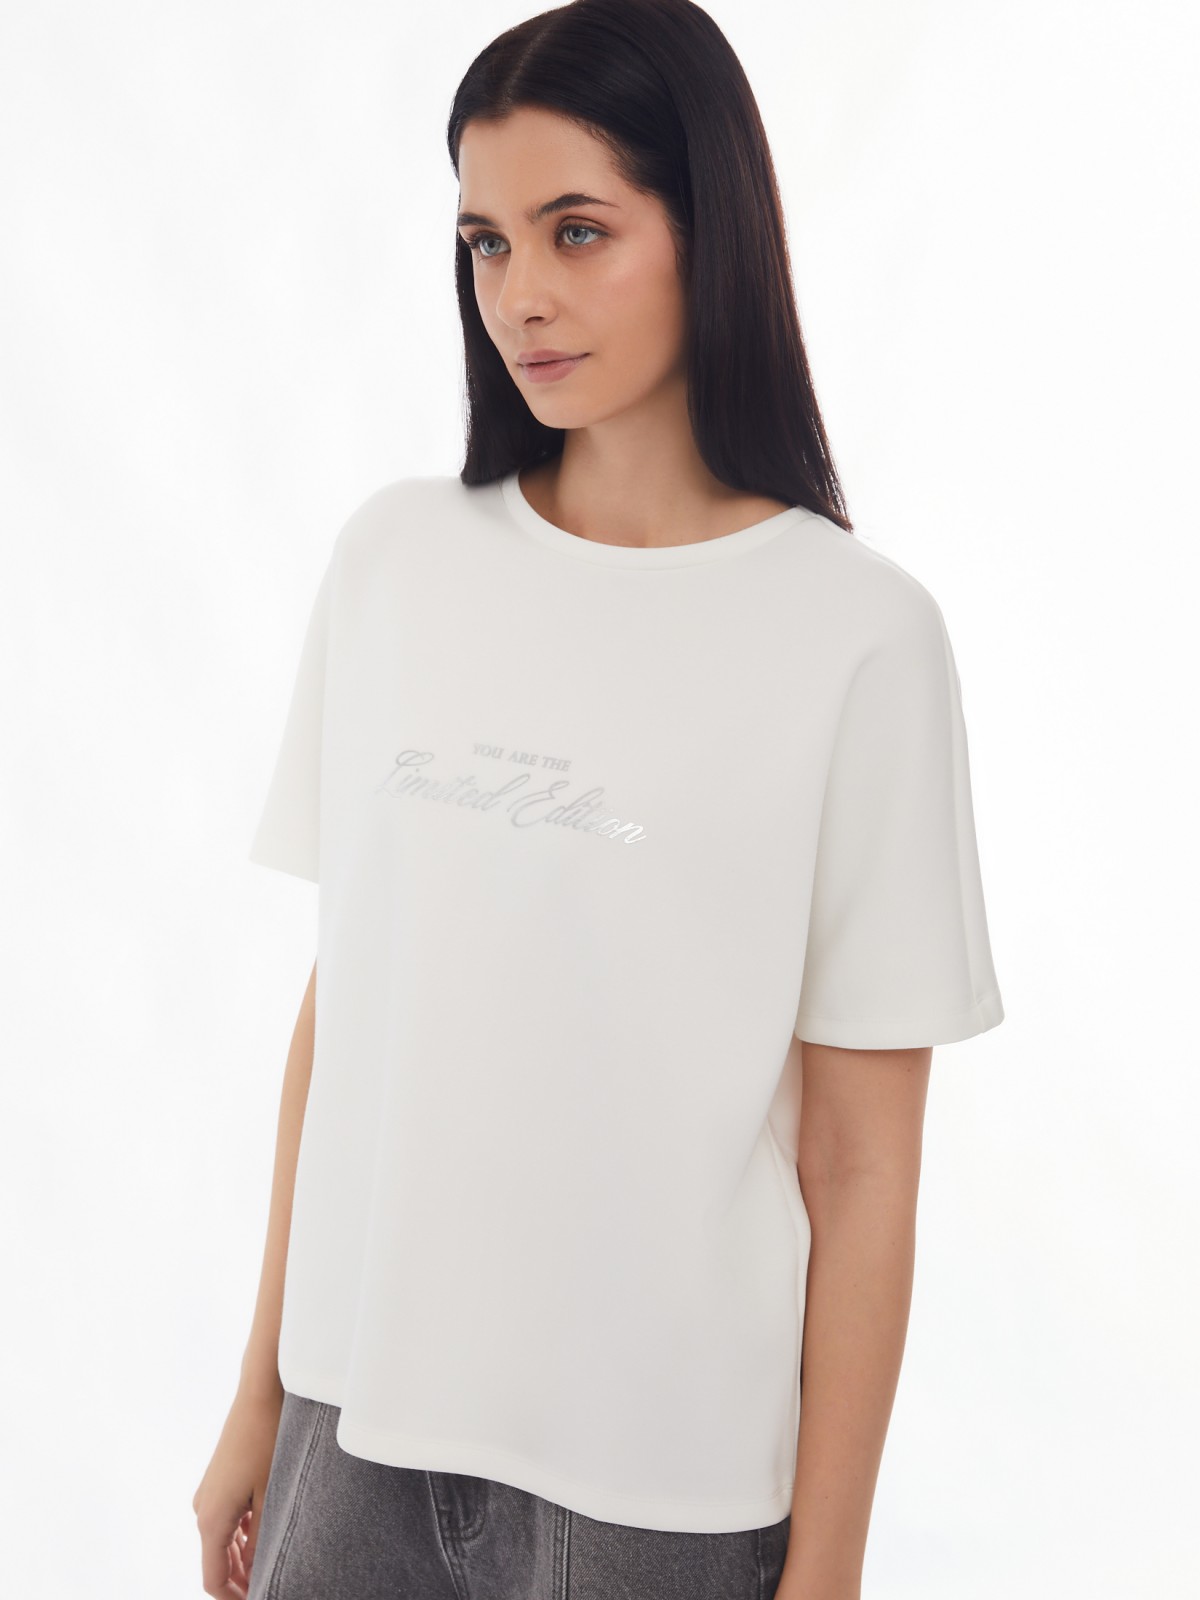 Блузка-футболка из неопрена с принтом-надписью zolla 024133210243, цвет молоко, размер XS - фото 3